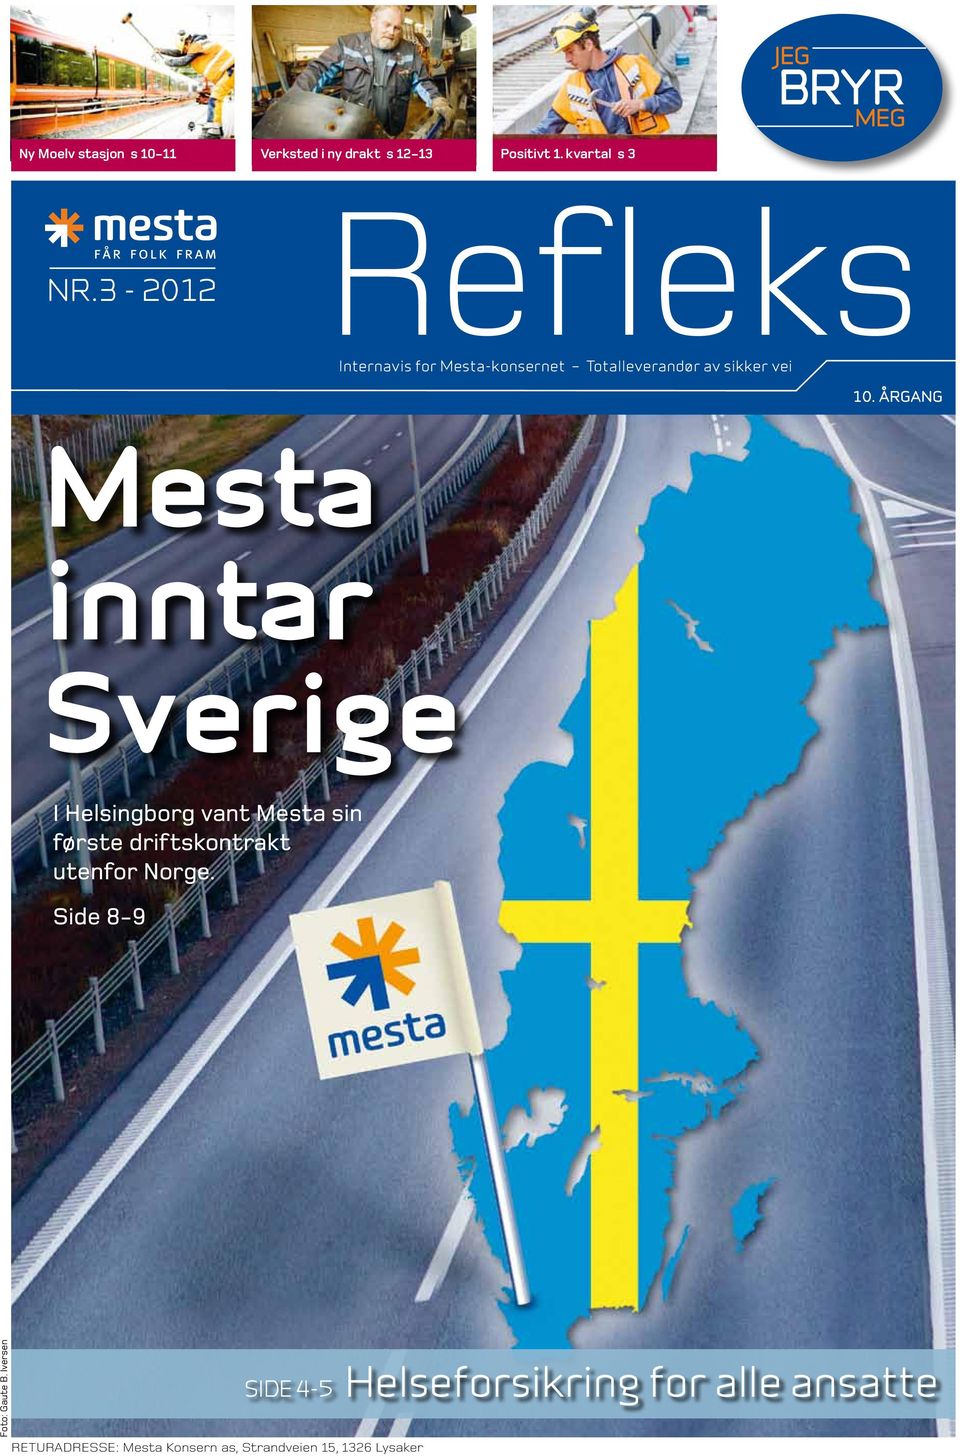 ÅRGANG Mesta inntar Sverige I Helsingborg vant Mesta sin første driftskontrakt utenfor Norge.